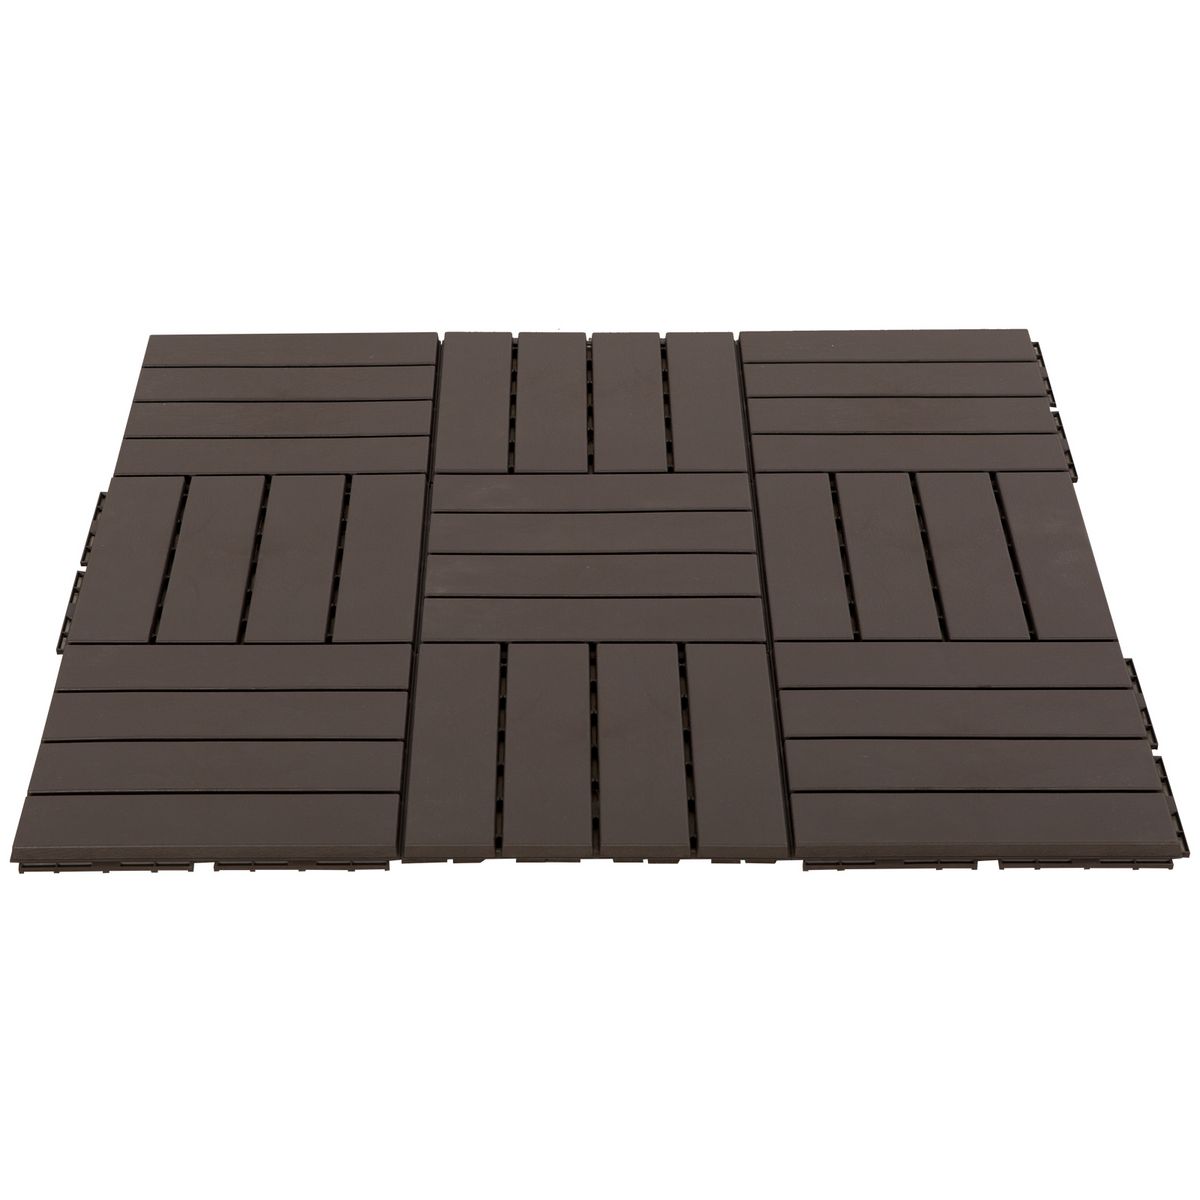 OUTSUNNY Caillebotis - dalles terrasse - lot de  9 - emboîtables, installation très simple - petits carreaux composite plastique imitation bois chocolat